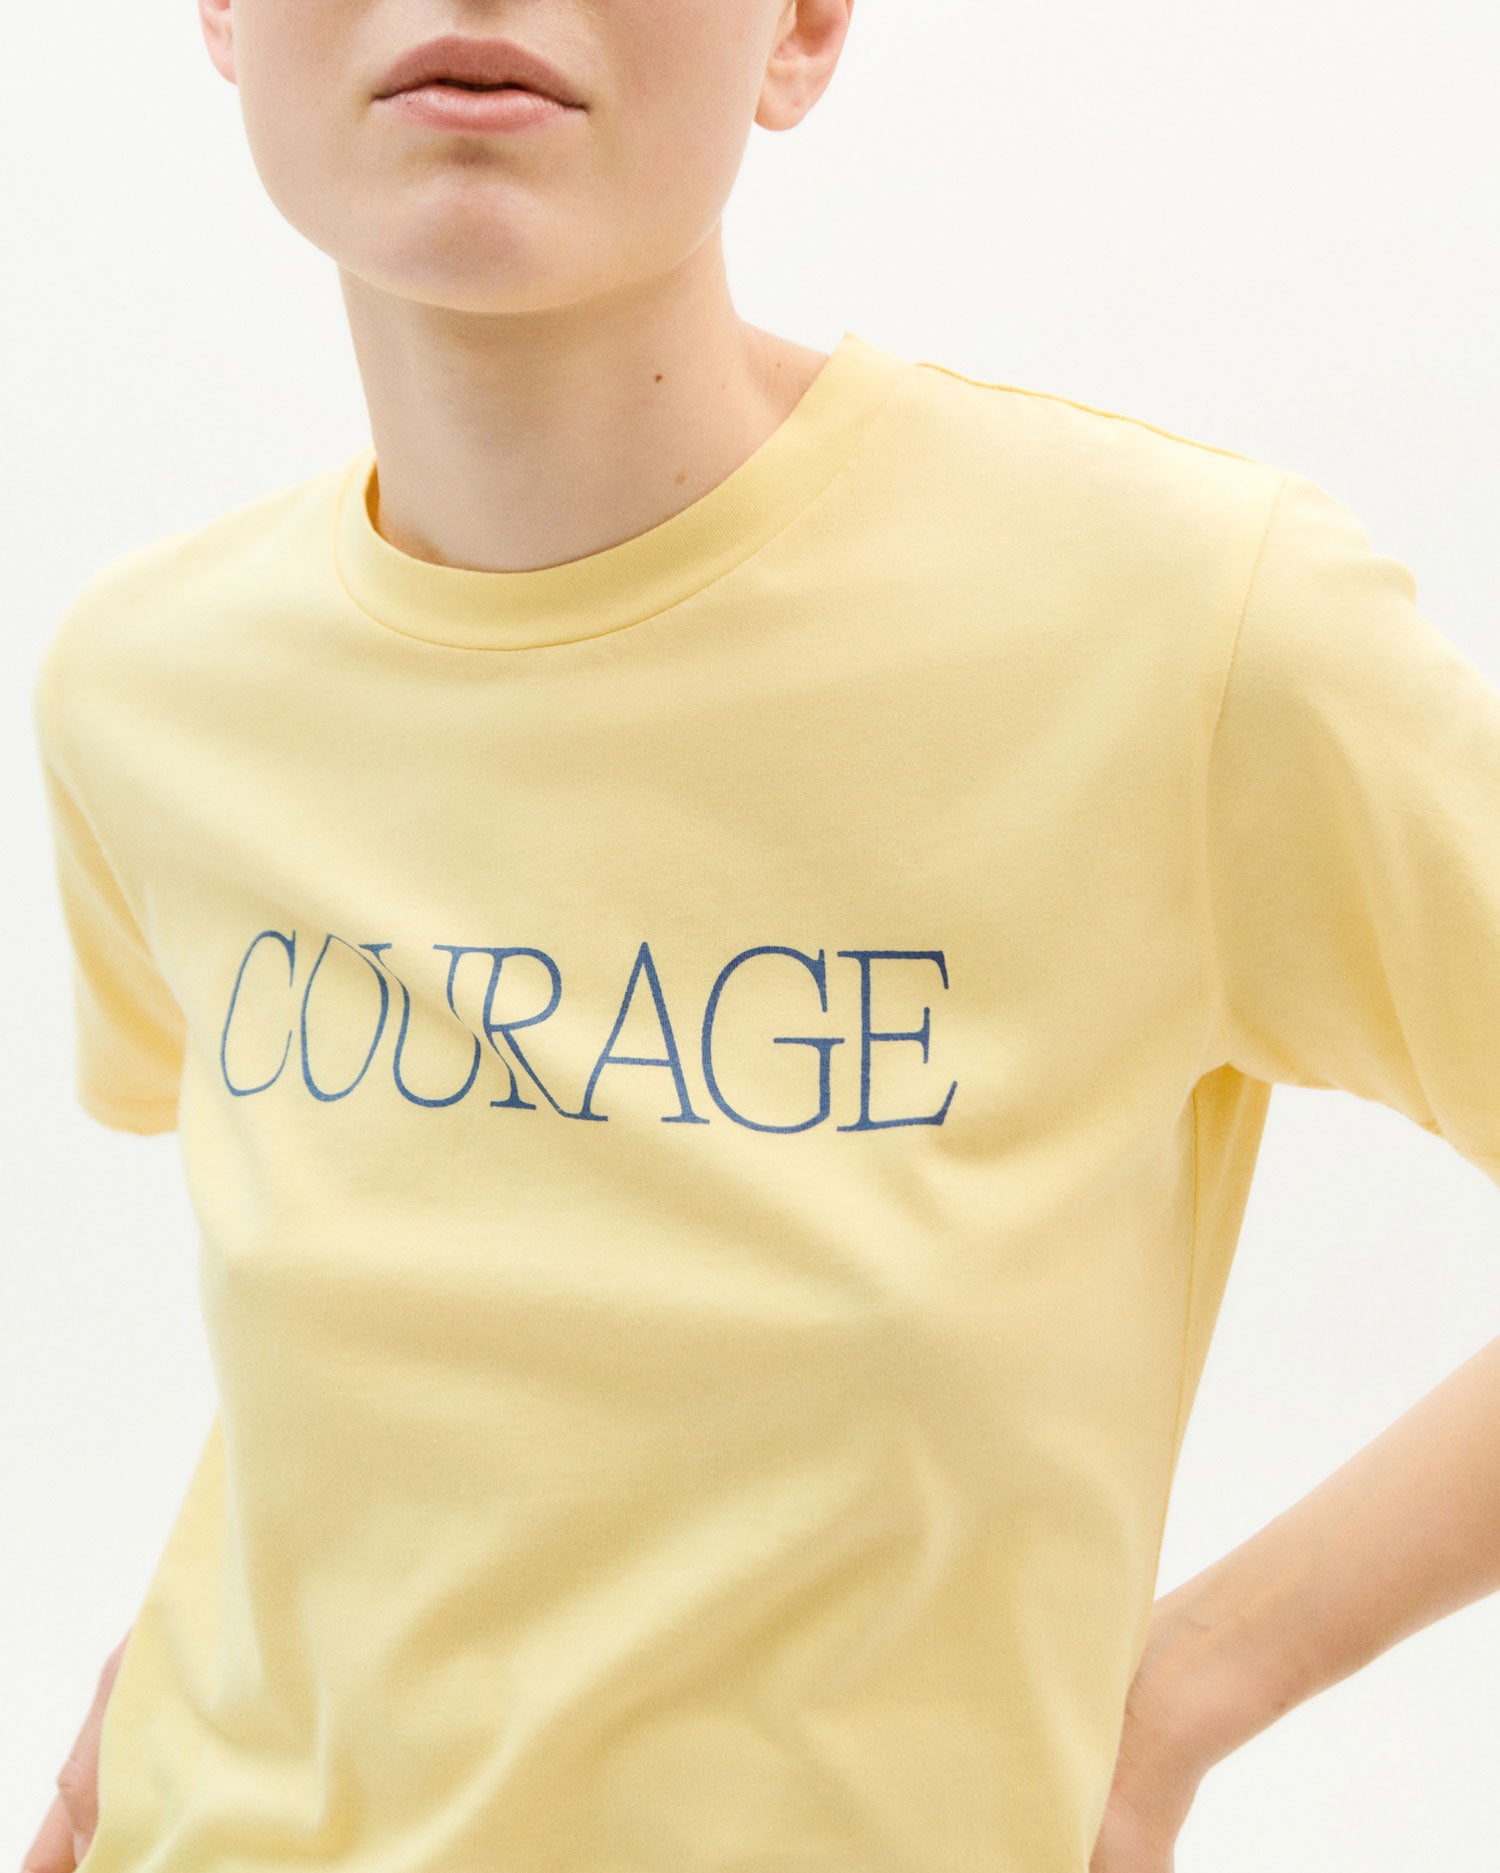 Courage T-Shirt S - Thinking Mu